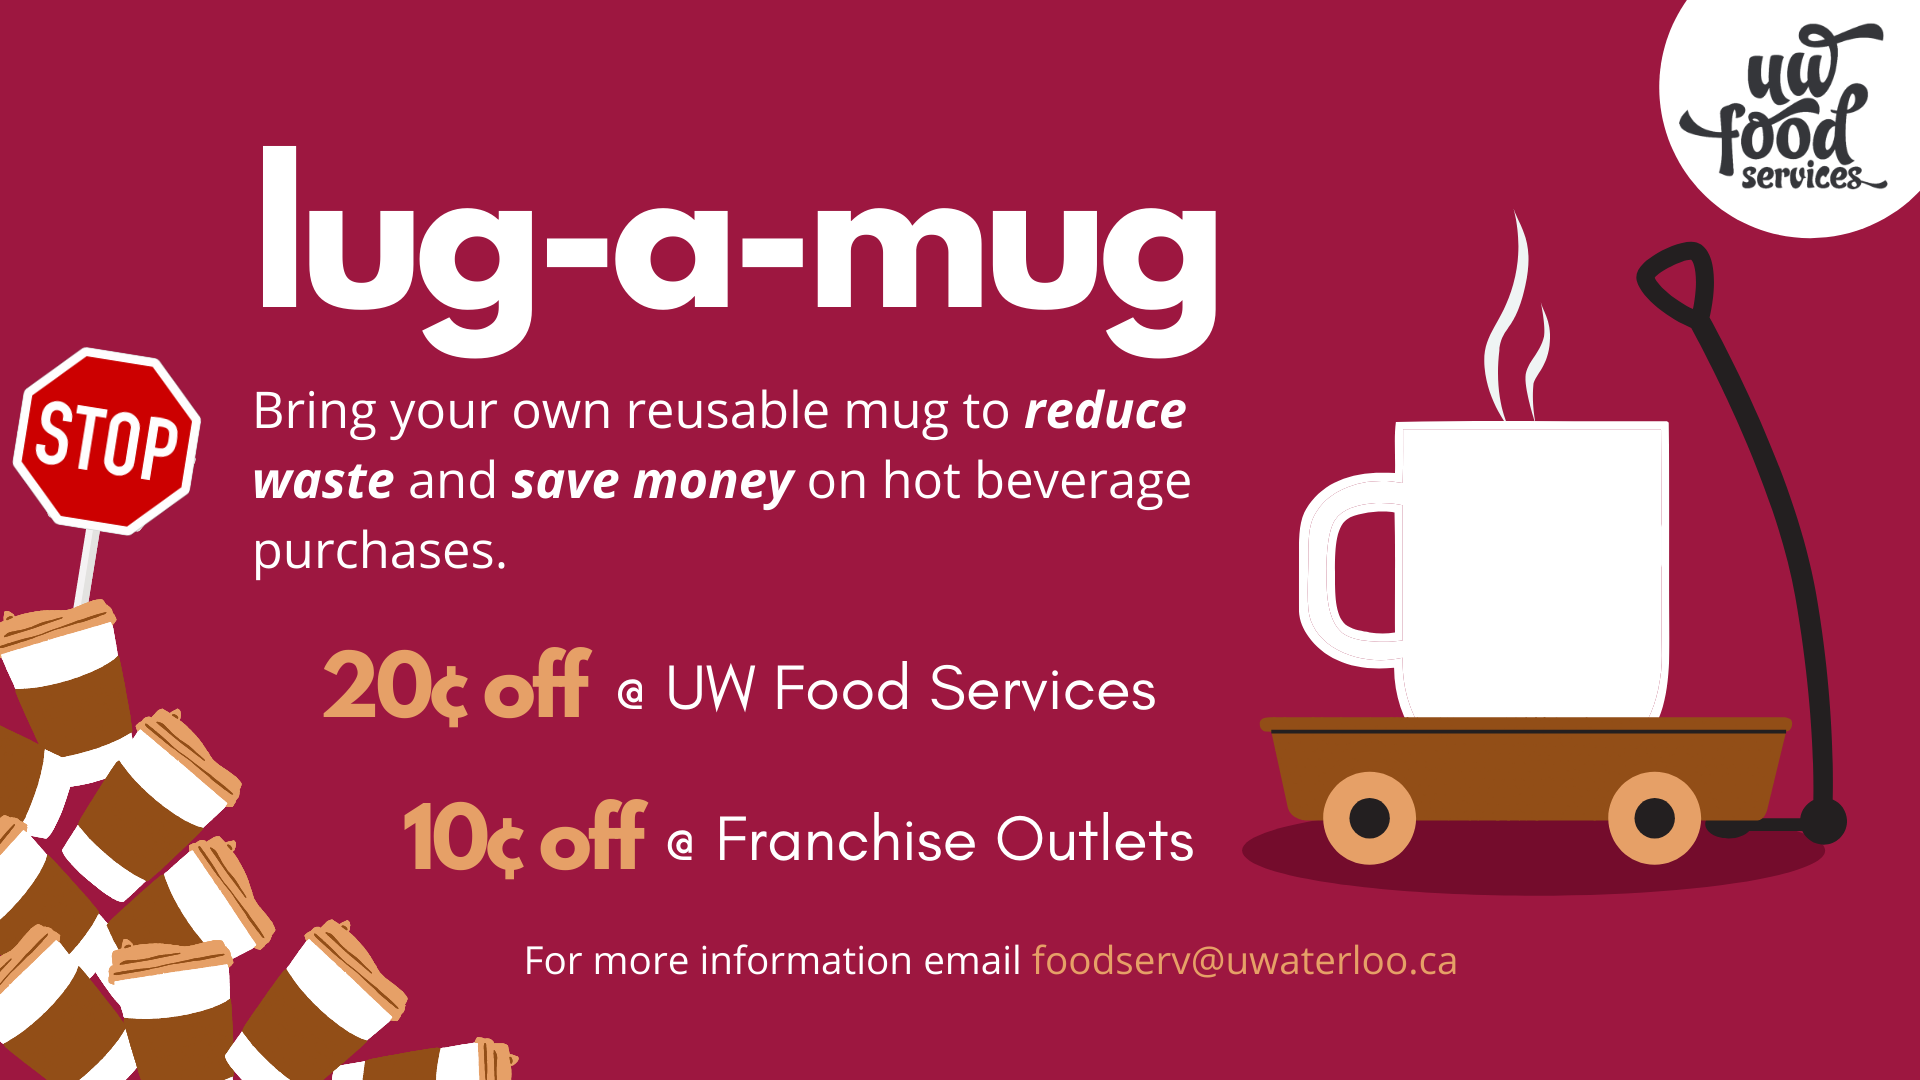 lug-a-mug promotional poster